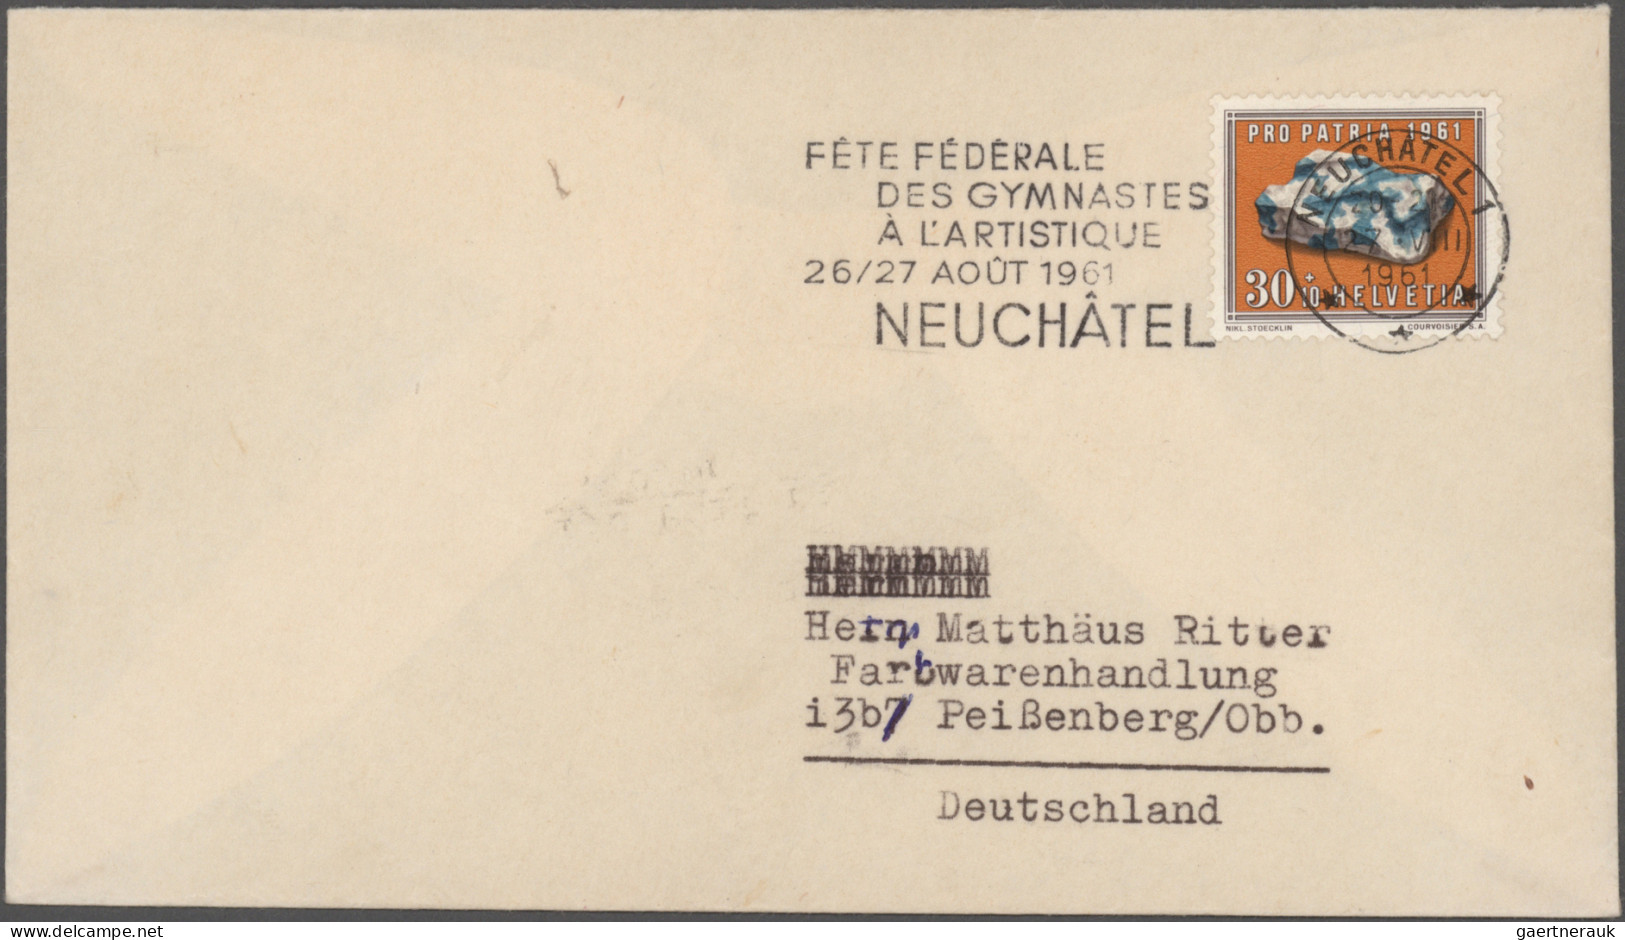 Schweiz: 1909/1996, gute Partie von ca. 400 Belegen mit attraktiven Frankaturen,